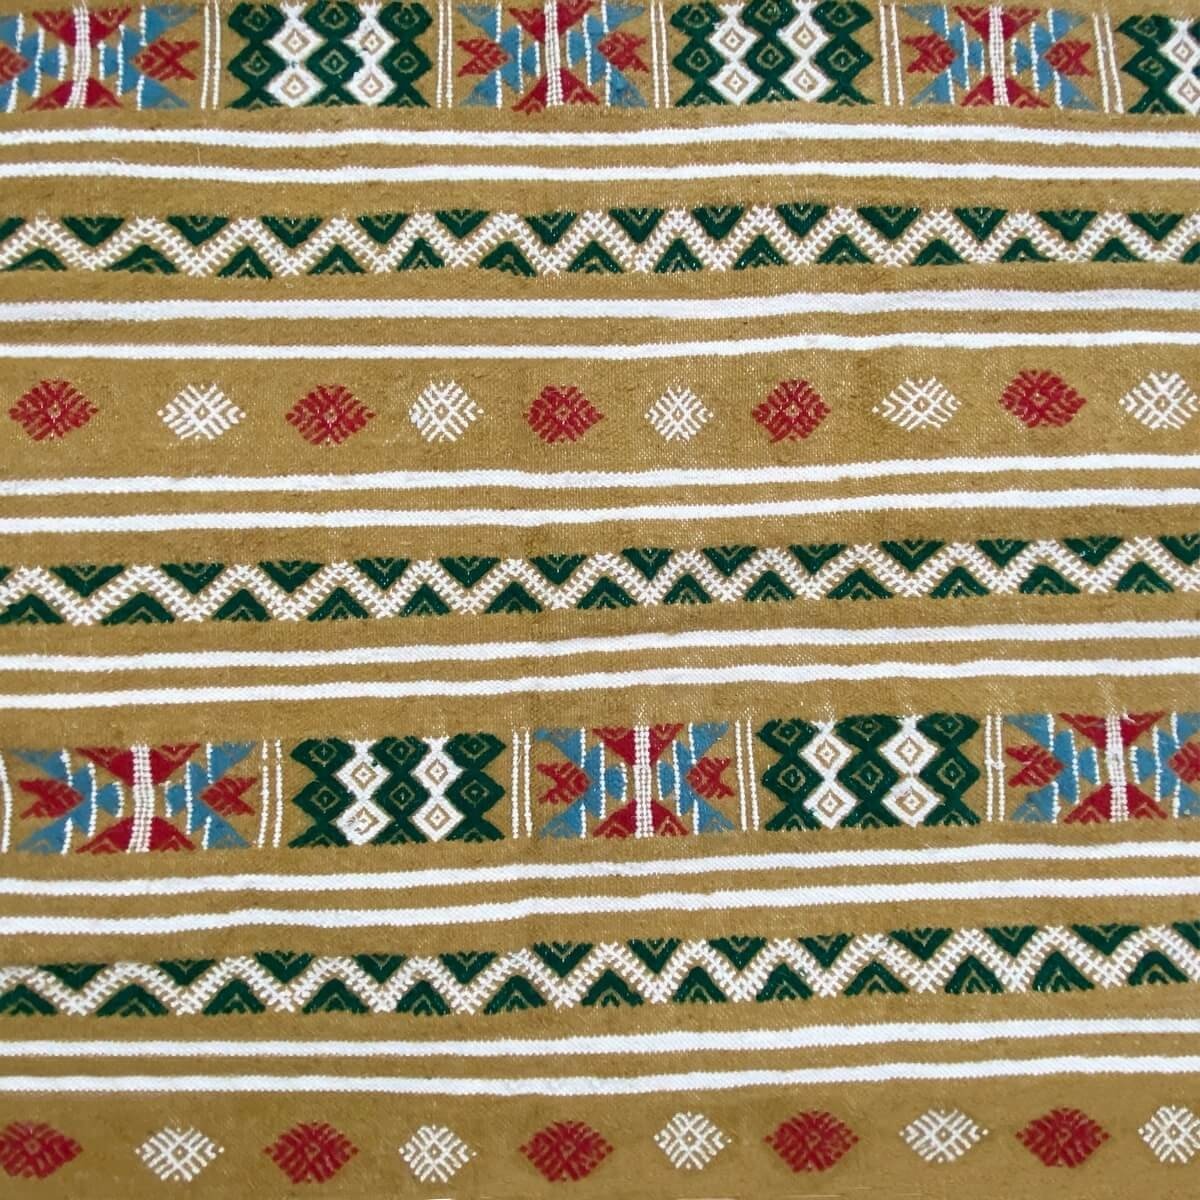 Tapete berbere Tapete Kilim Takut 103x173 Amarelo/Branco (Tecidos à mão, Lã, Tunísia) Tapete tunisiano kilim, estilo marroquino.